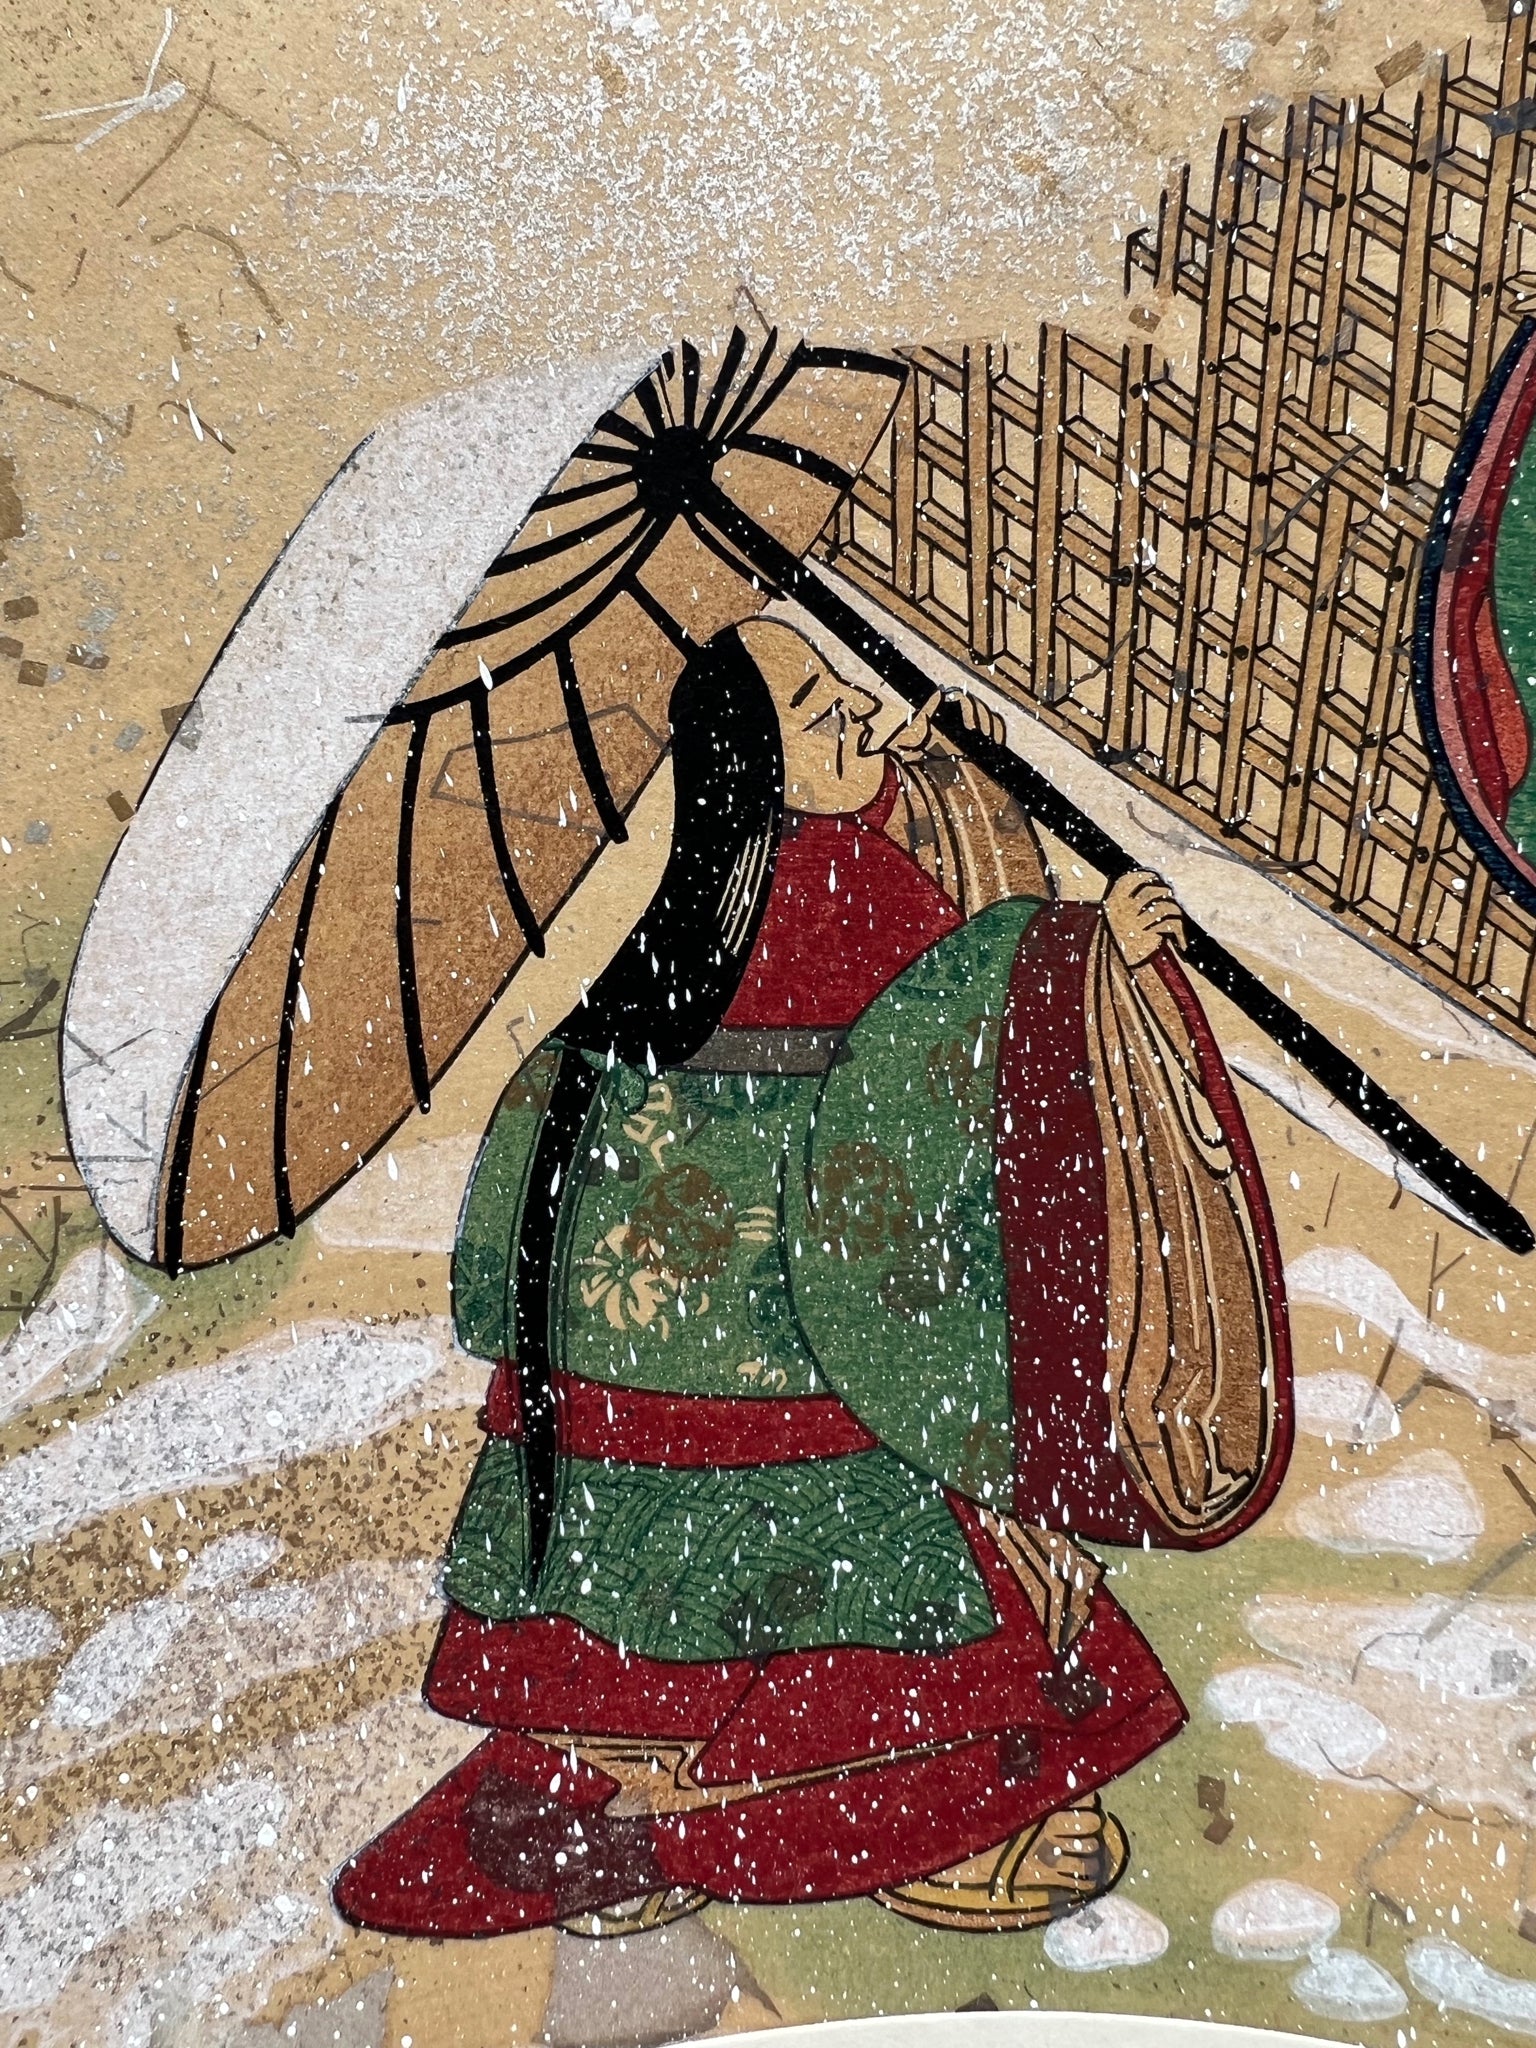 Estampe japonaise en forme d'éventail parsemée de fragments d'or et d'argent, matin neigeux, gros plan vieille femme se protégeant de la neige avec une ombrelle.